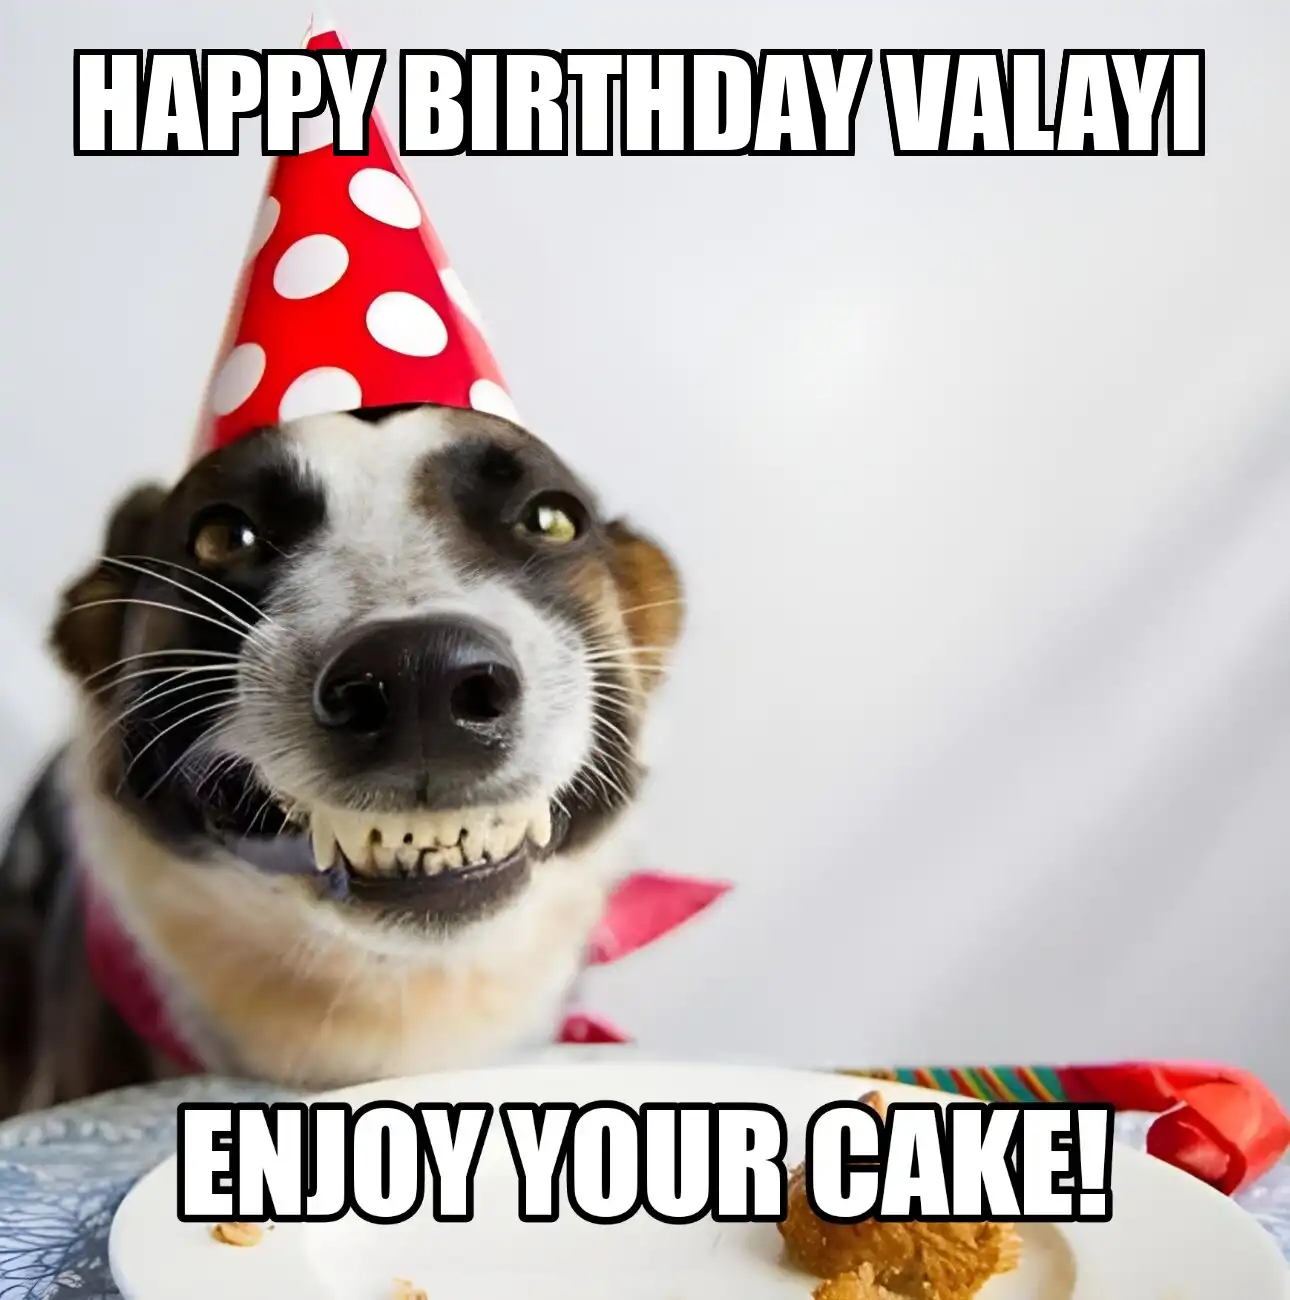 Happy Birthday Valayi Enjoy Your Cake Dog Meme